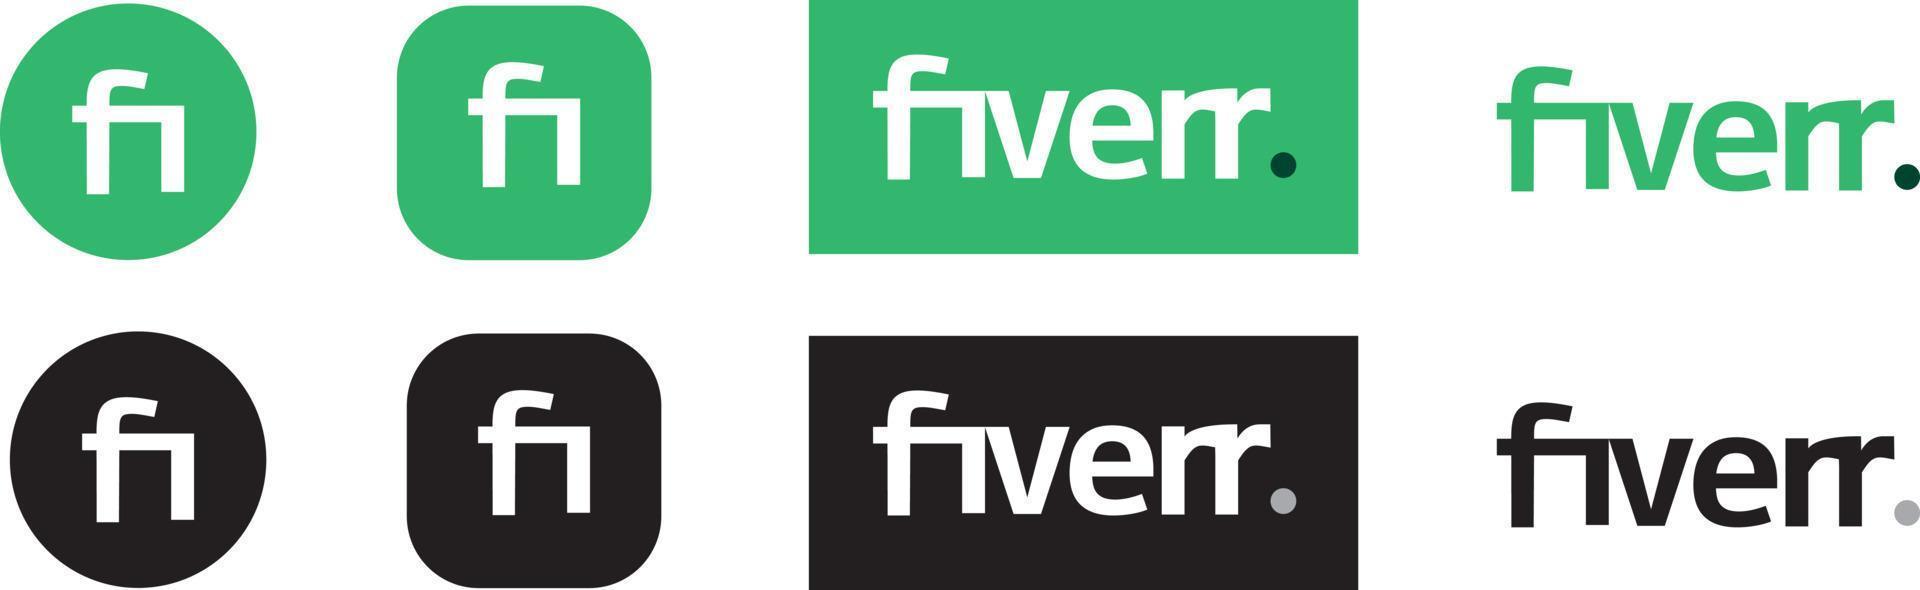 fiverr nya 2020-logotypen. konst och design vektor logotyp isolerad på vit bakgrund. redaktionell vektor logotyp tryckt på papper.